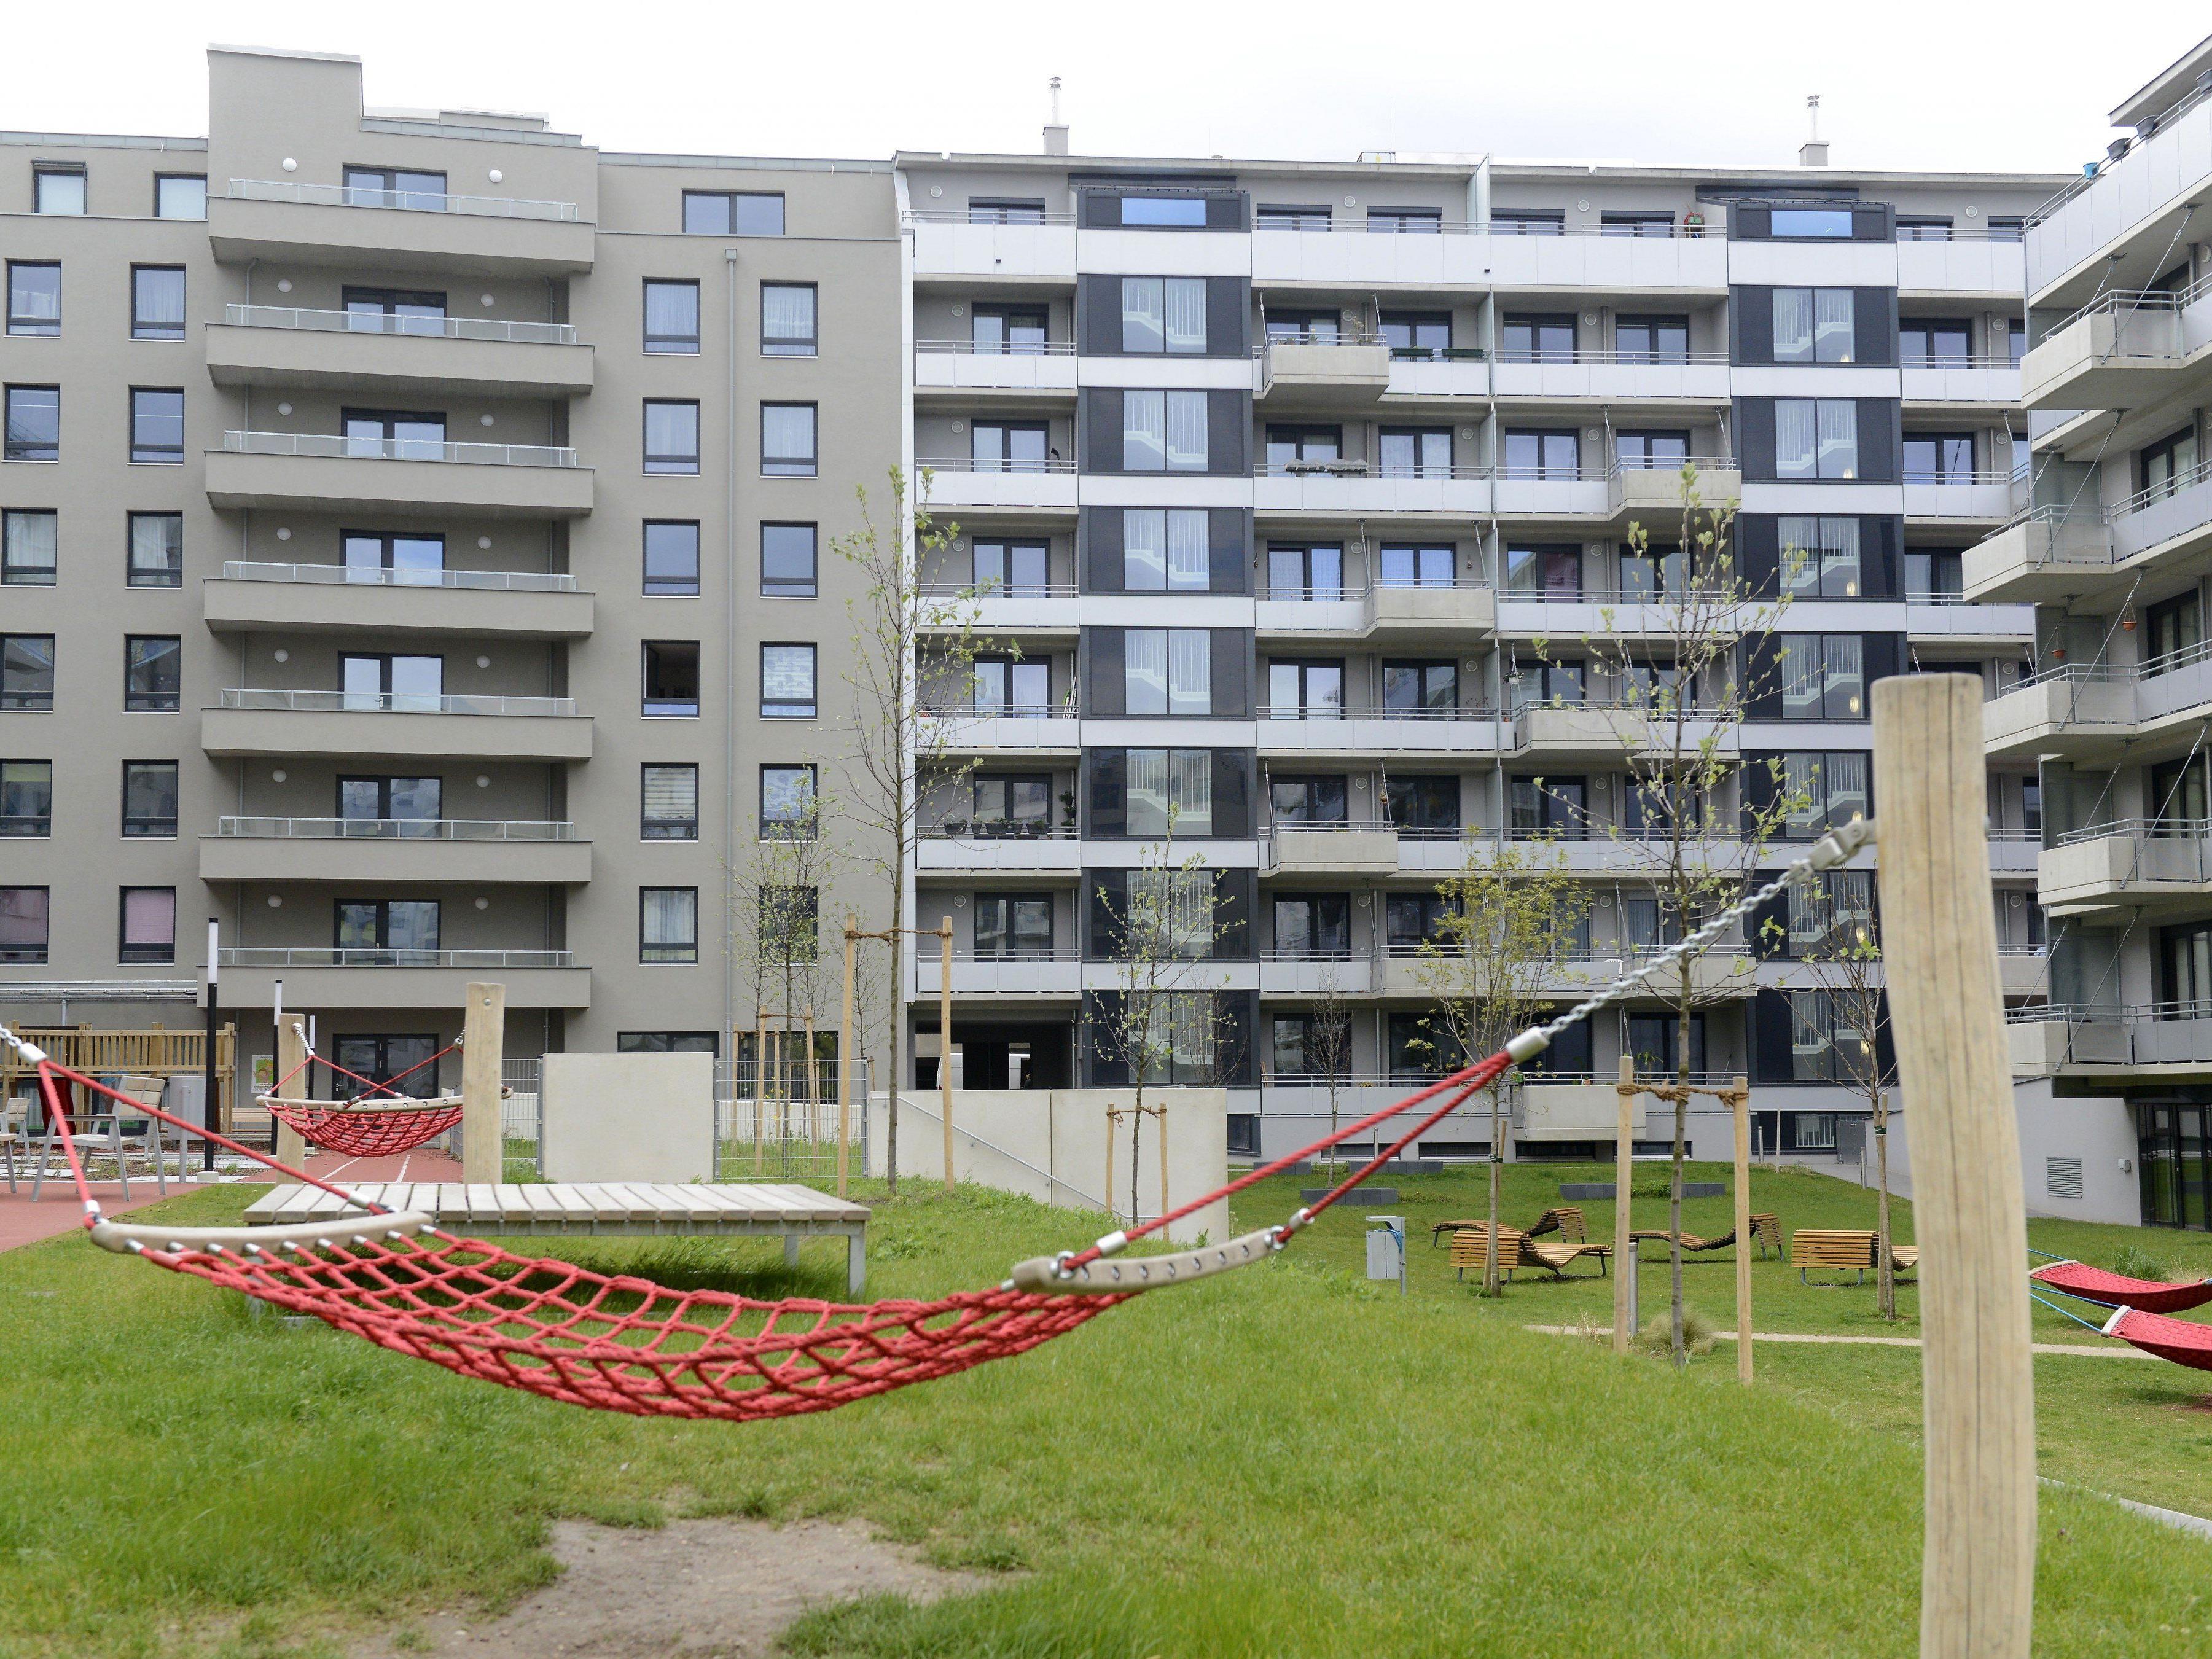 "Wohnen soll leistbar bleiben": Darauf pocht die Plattform Wohnungsbau.